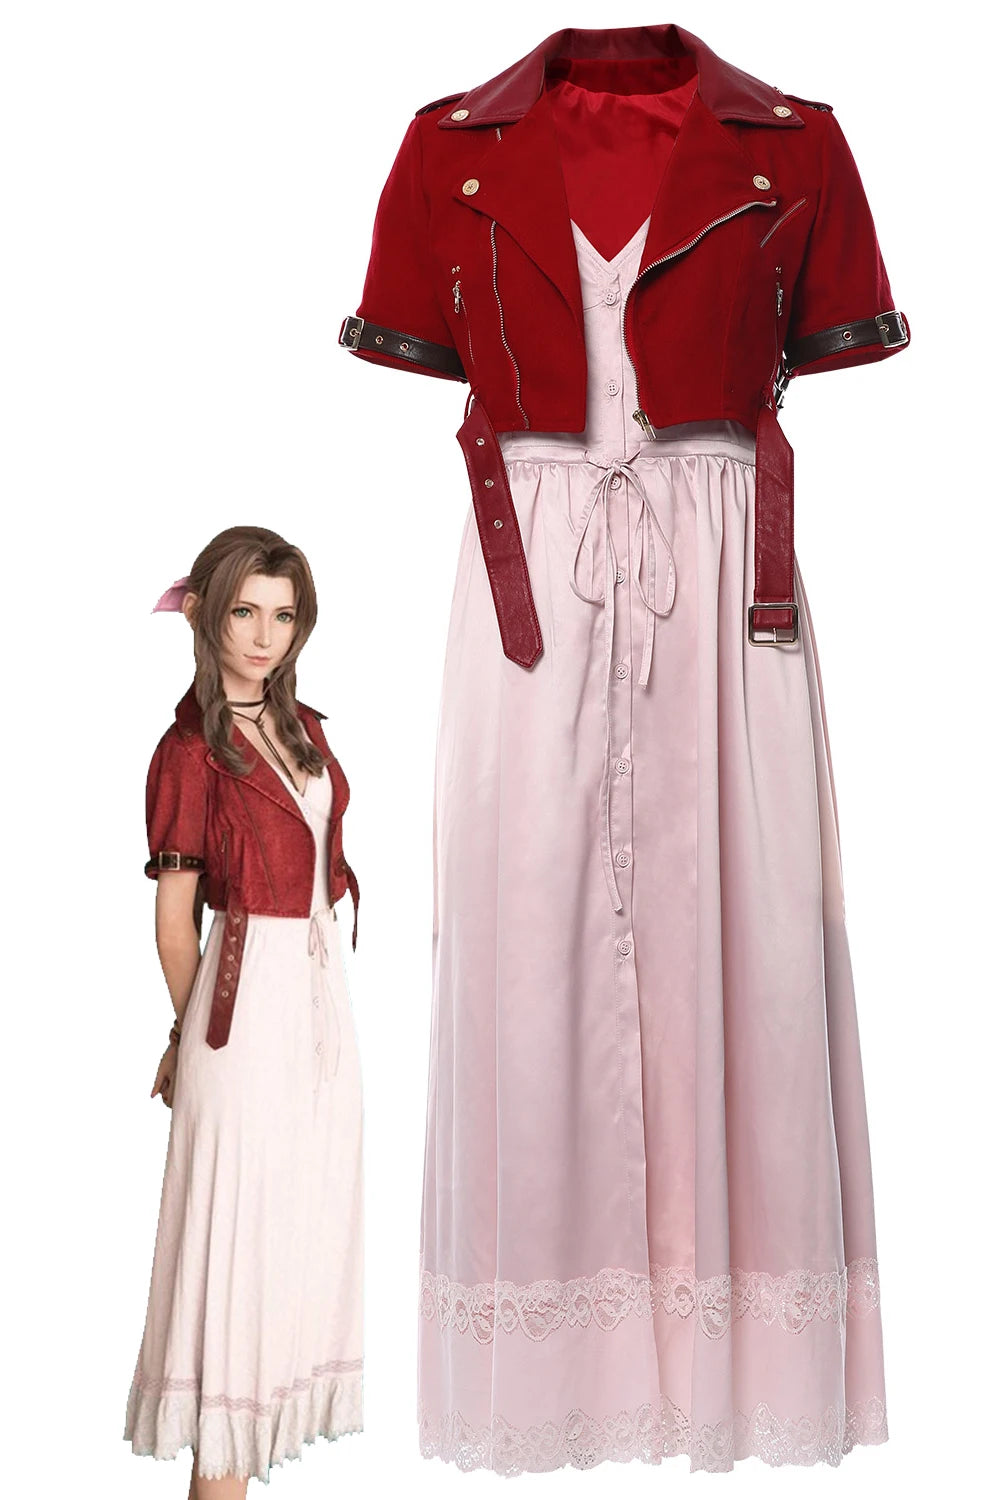 Disfraz de Final Fantasy VII para mujer, chaqueta de Aerith Gainsborough, trajes de vestir, ropa de fiesta de Halloween para mujer, juego de rol